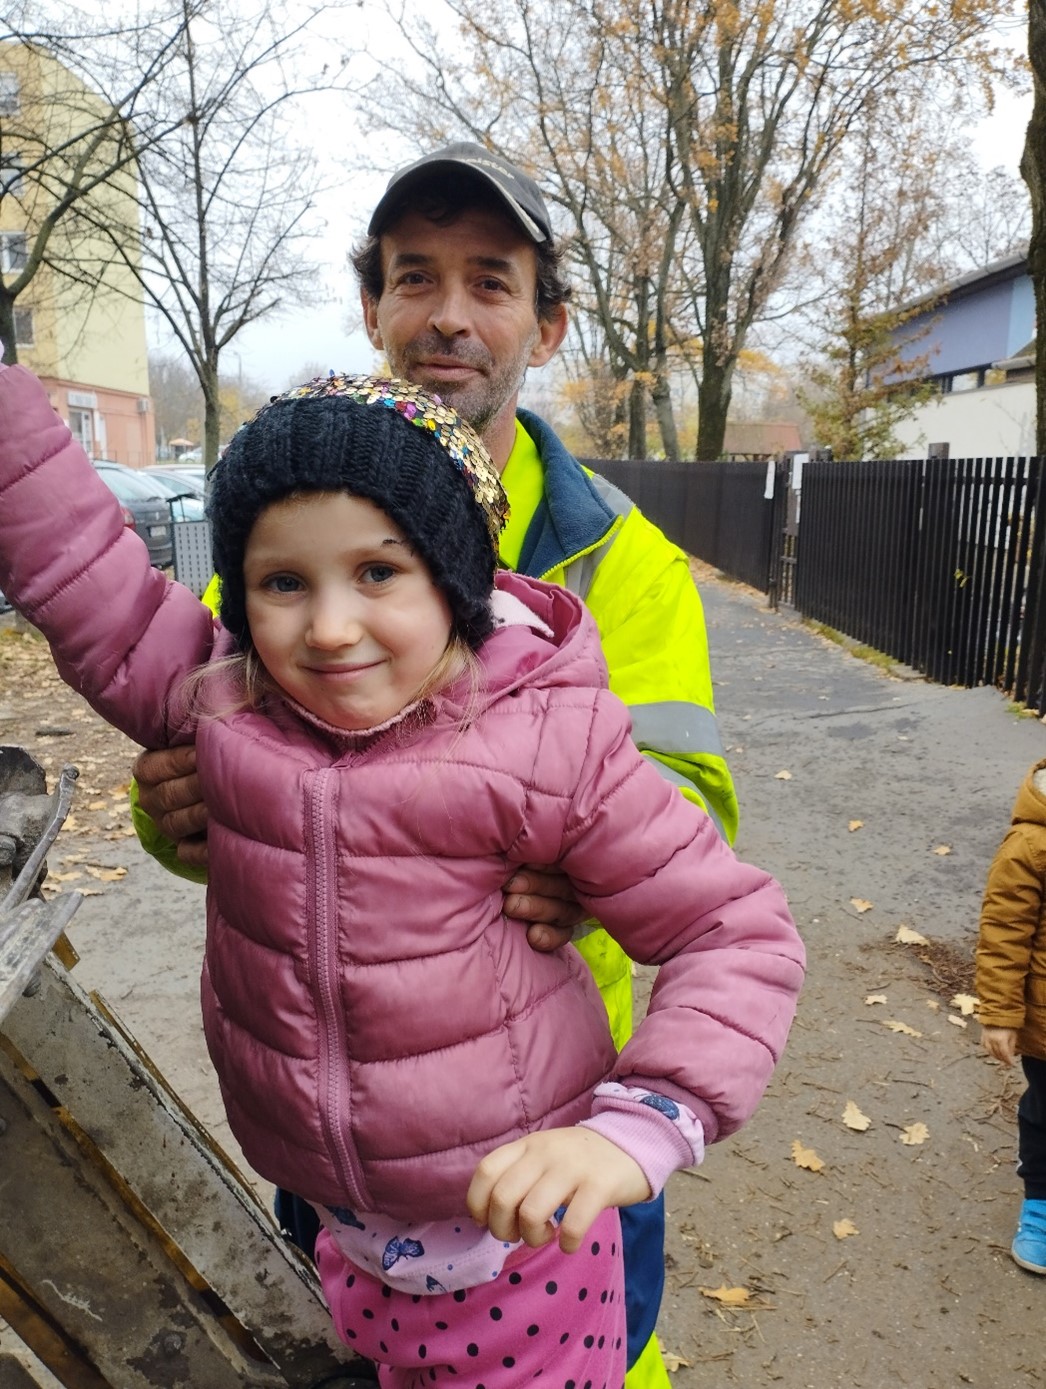 Társaságunk rakodója, Fazekas Krisztián mutatja be a kukásautó fellépőjét egy óvodás kisgyereknek